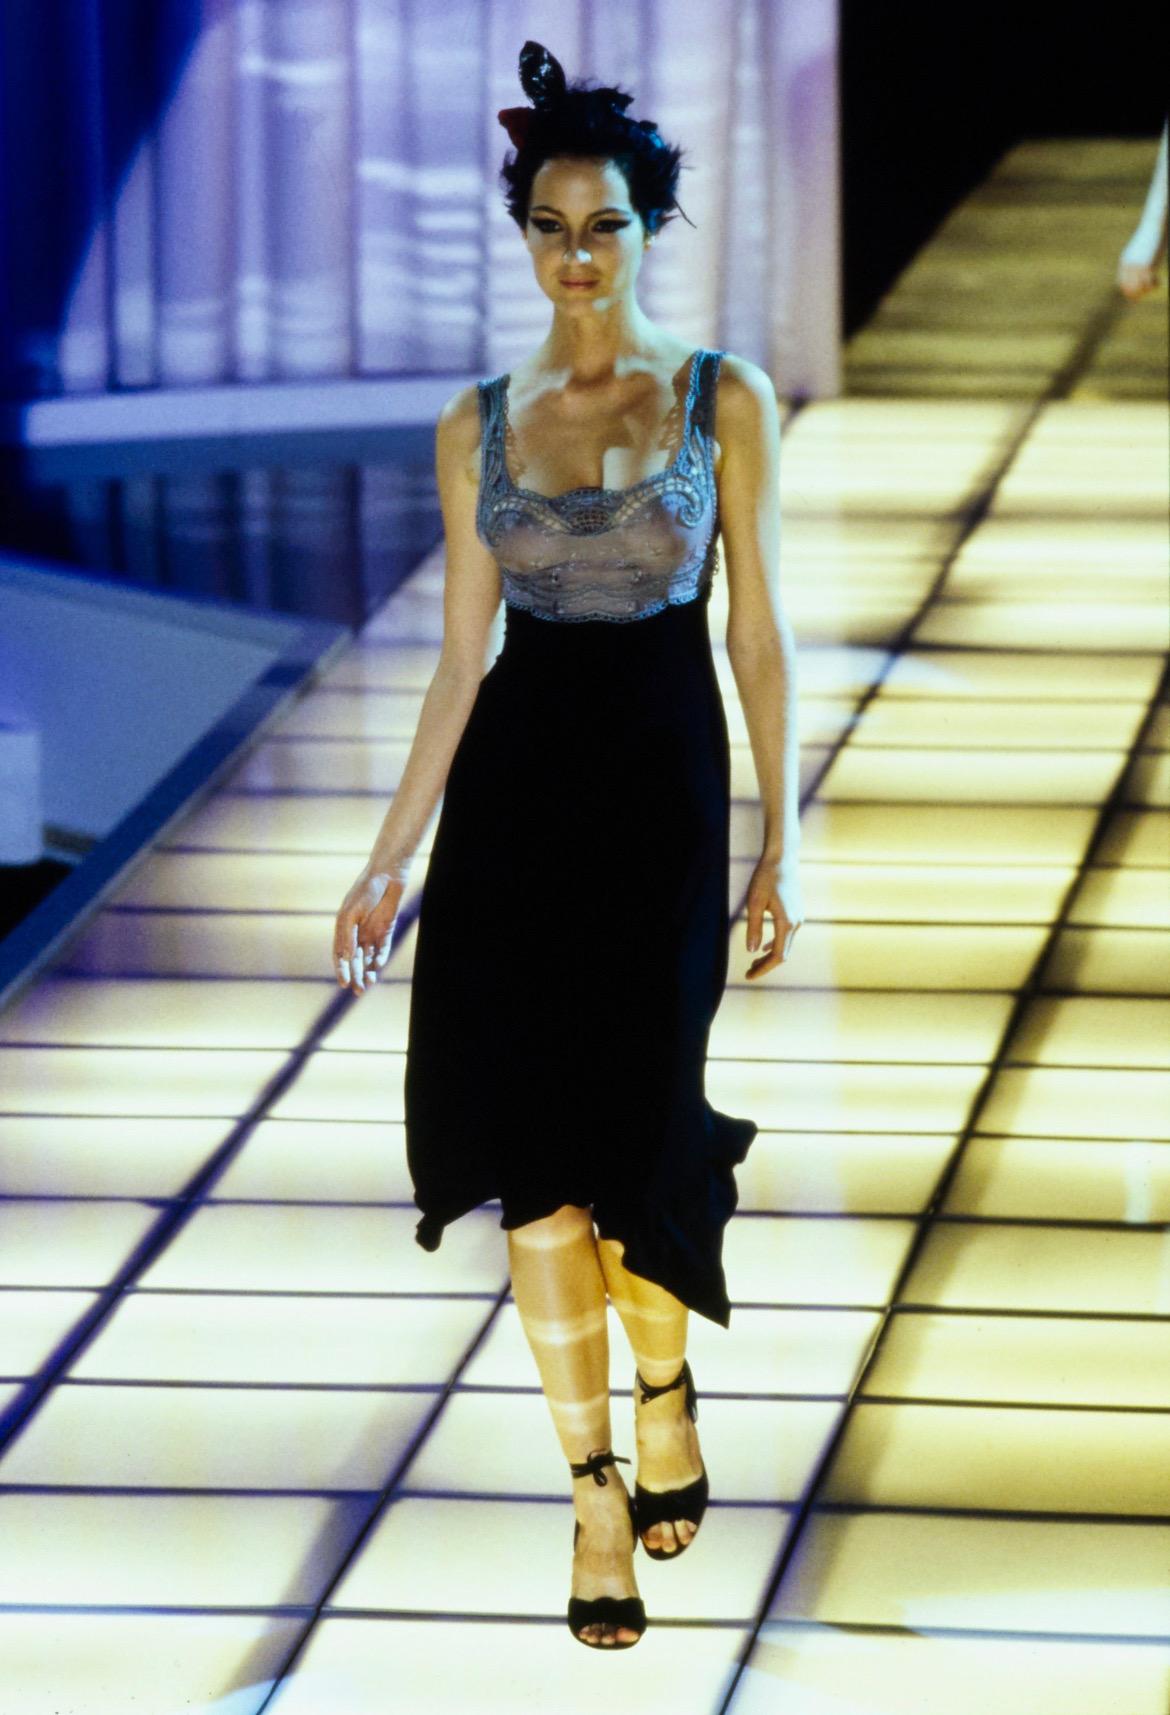 Voici une magnifique robe en dentelle Gianni Versace Couture, dessinée par Gianni Versace. Issue de la collection printemps/été 1997, cette robe a fait ses débuts sur le podium de la saison en tant que look numéro 76 porté par Chandra North. Cette